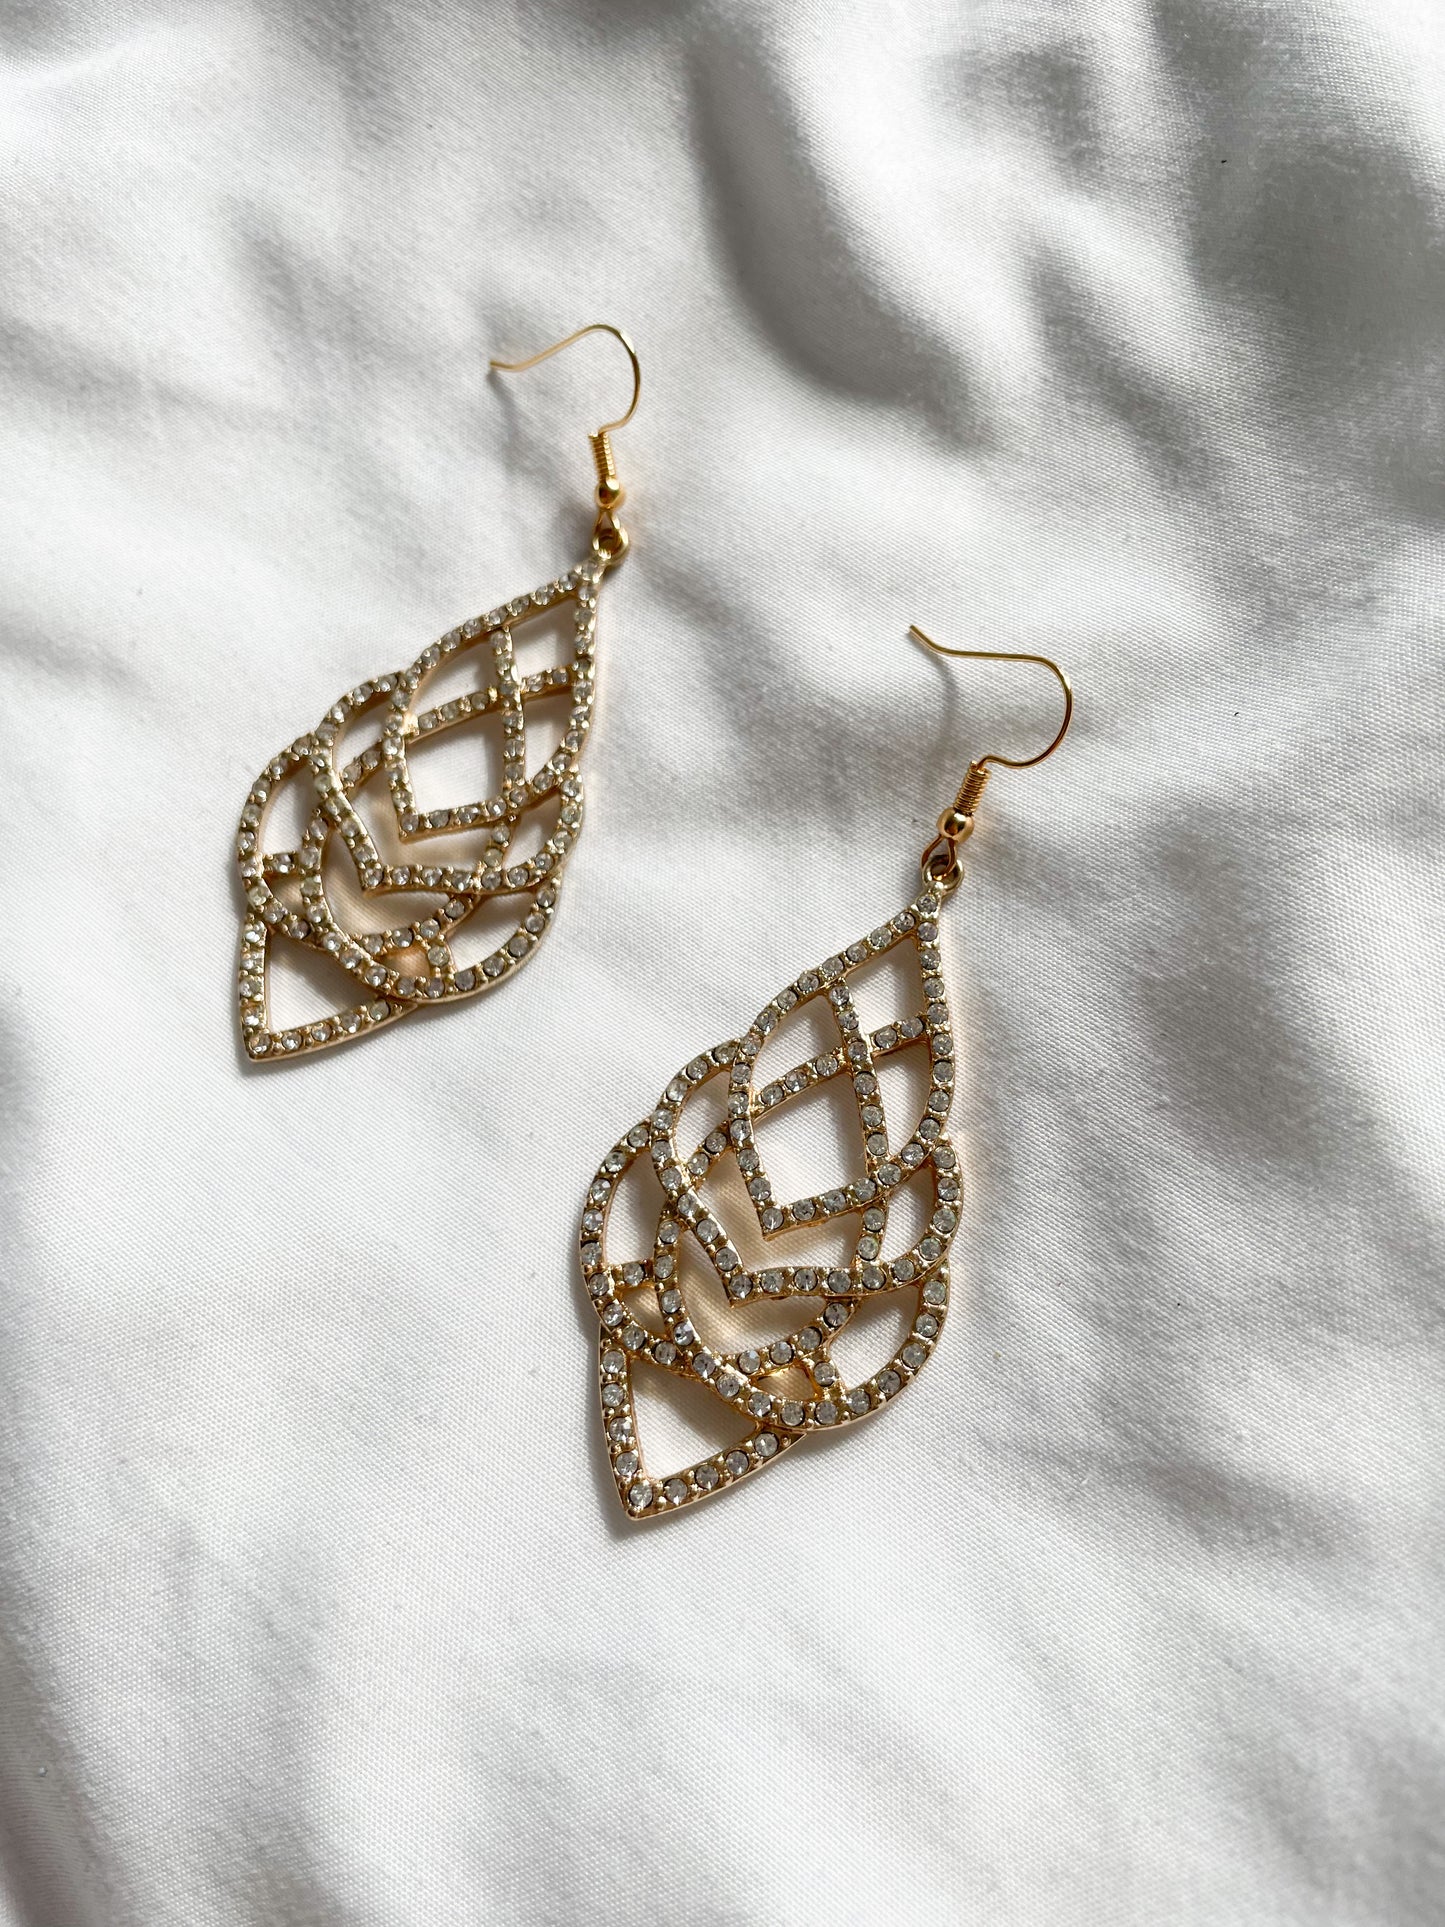 14K Gold Plated Crystal Ornate Dangle Earrings